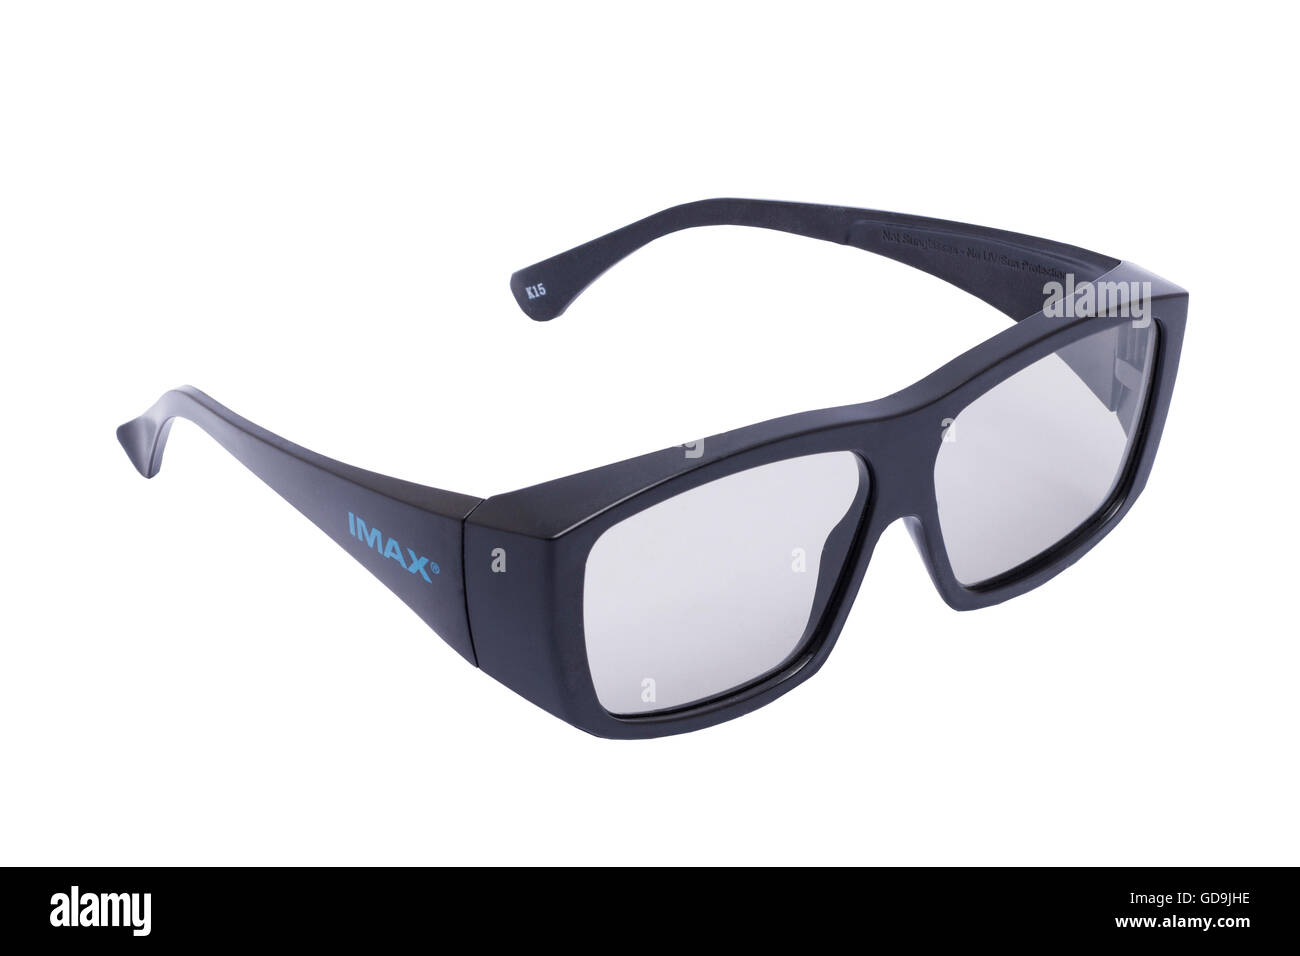 Imax 3d Kino Brille auf weißem Hintergrund Stockfotografie - Alamy